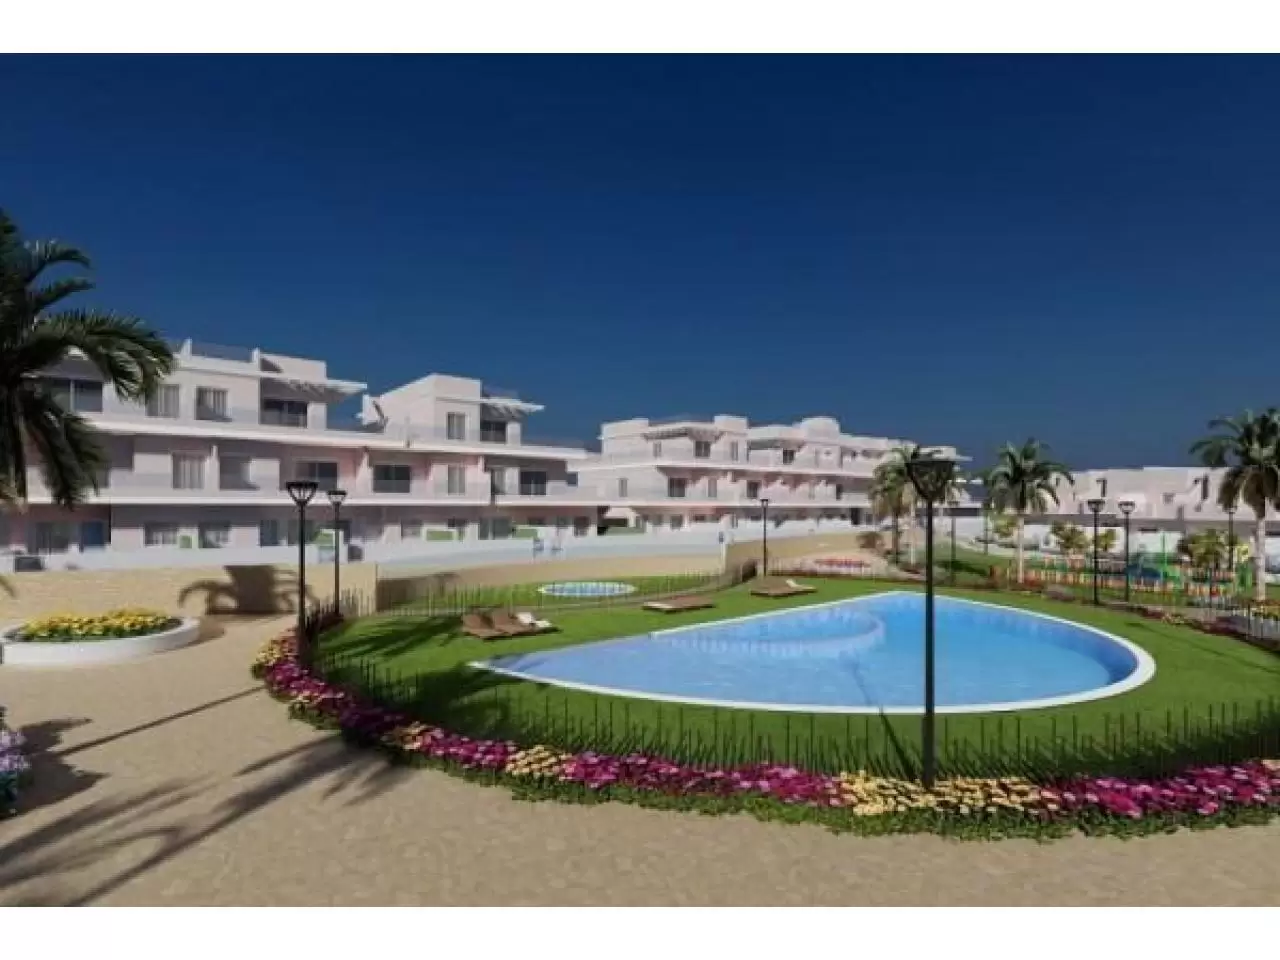 Недвижимость в Испании,Квартиры рядом с пляжем от застройщика в Торре де Ла Орадада - 1